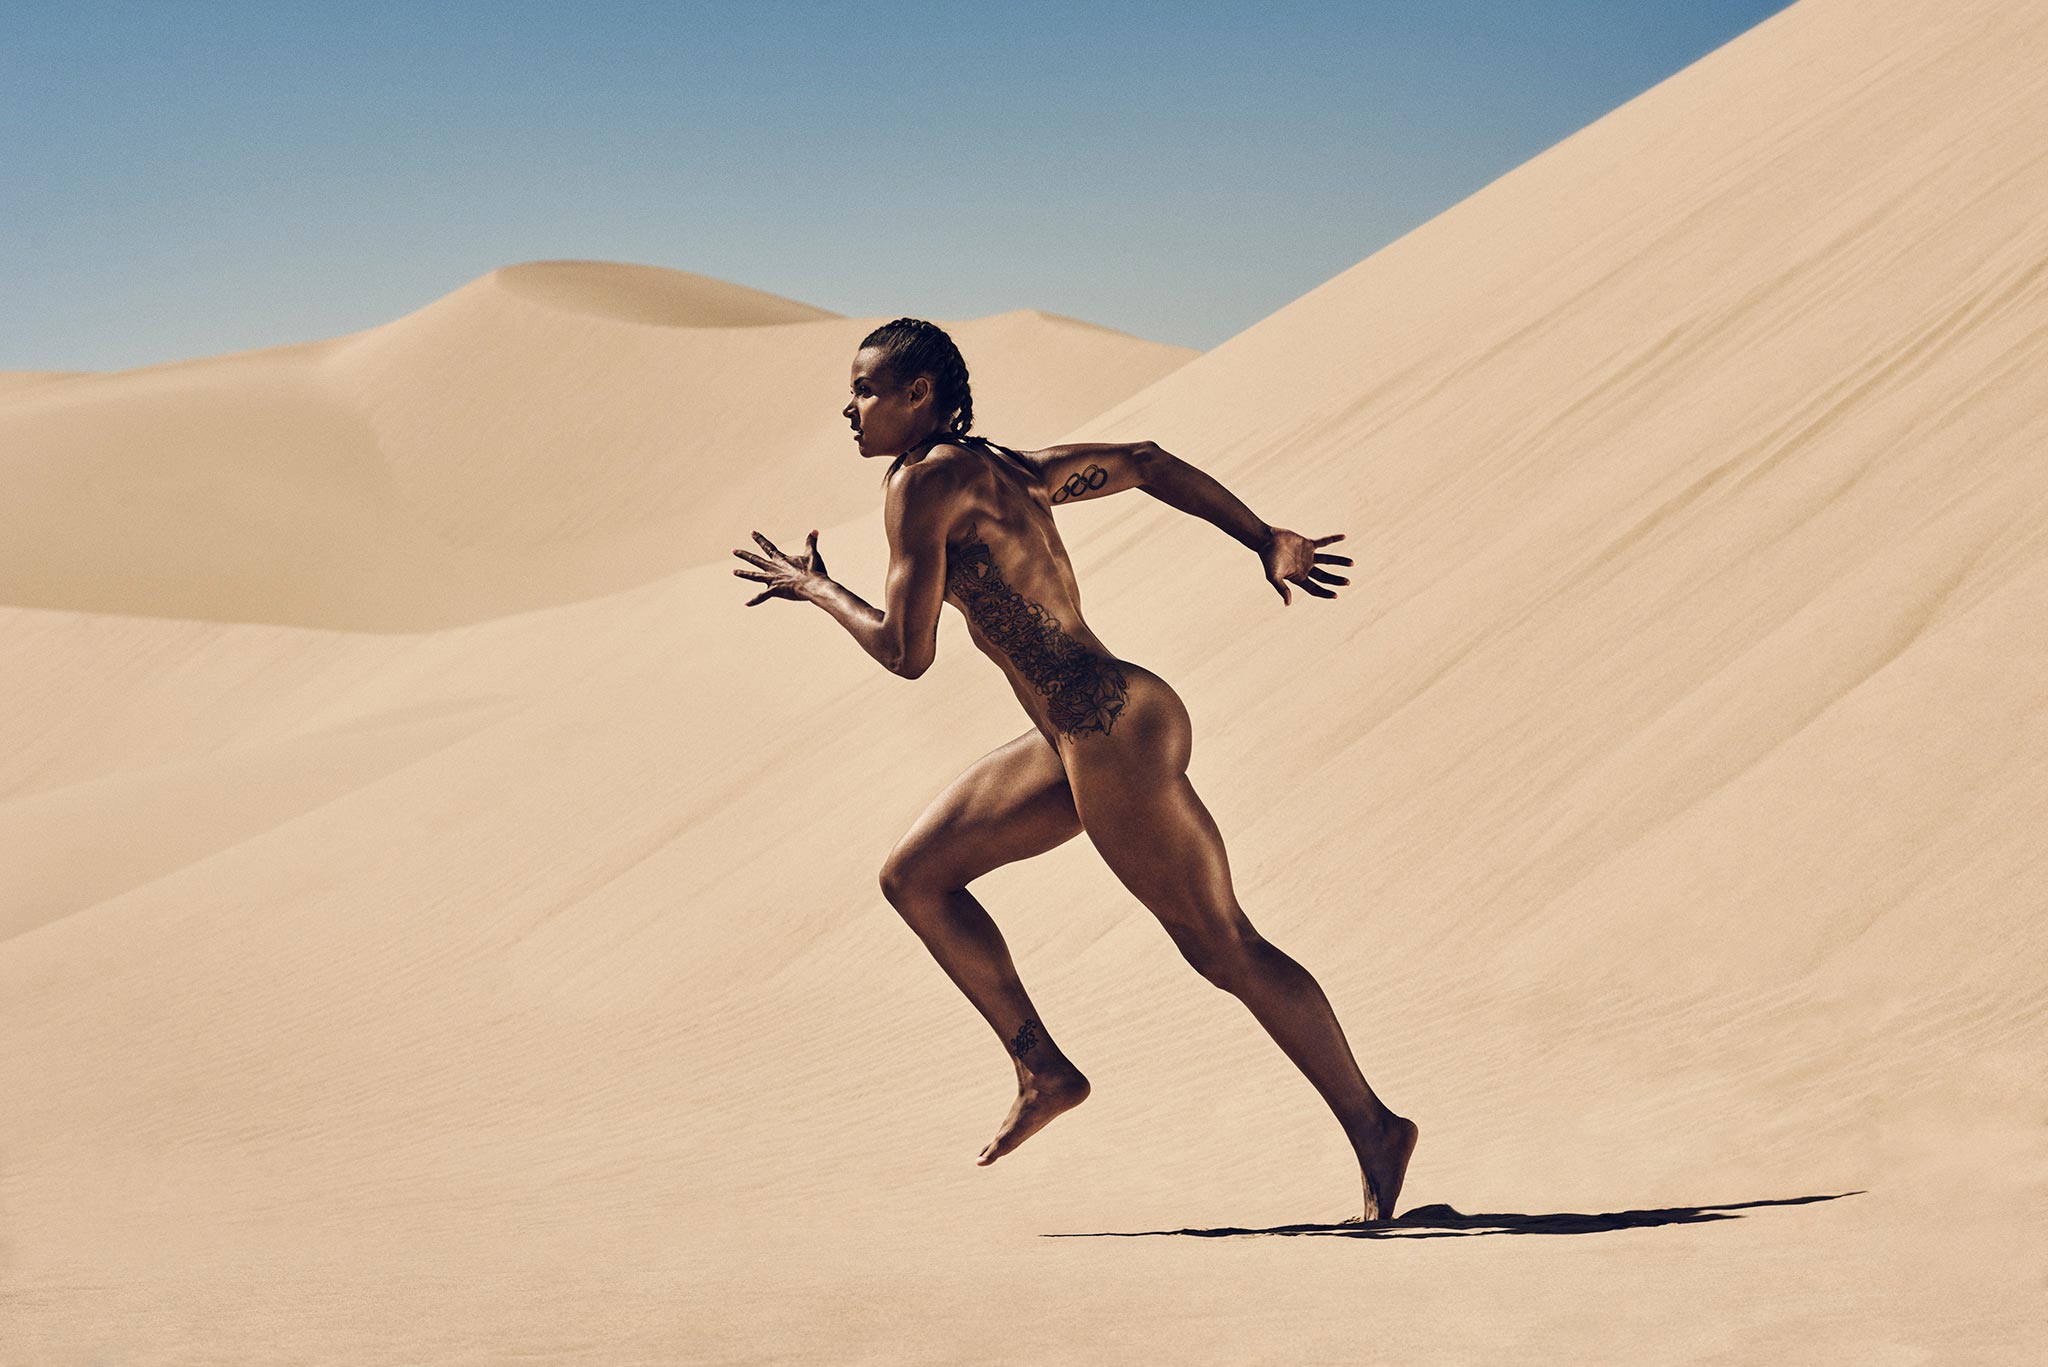 Гoлые и красивые: вот как выглядят тела спортсменов без одежды.